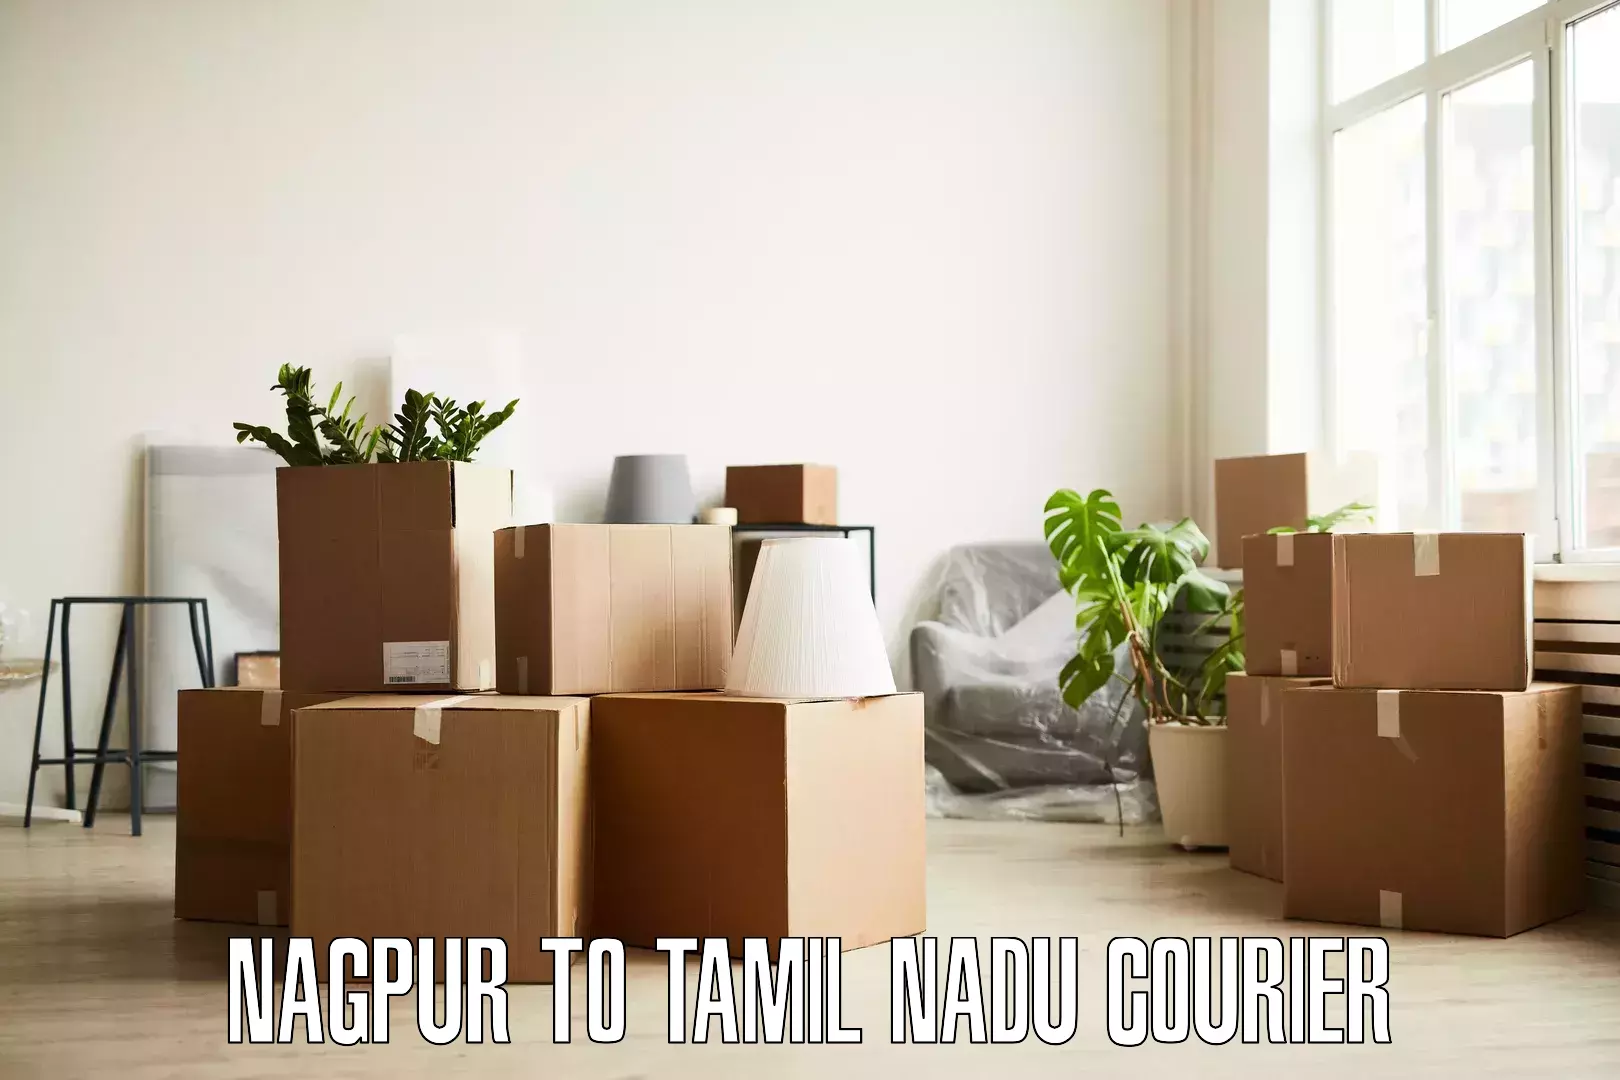 Home goods moving company Nagpur to Maharajapuram